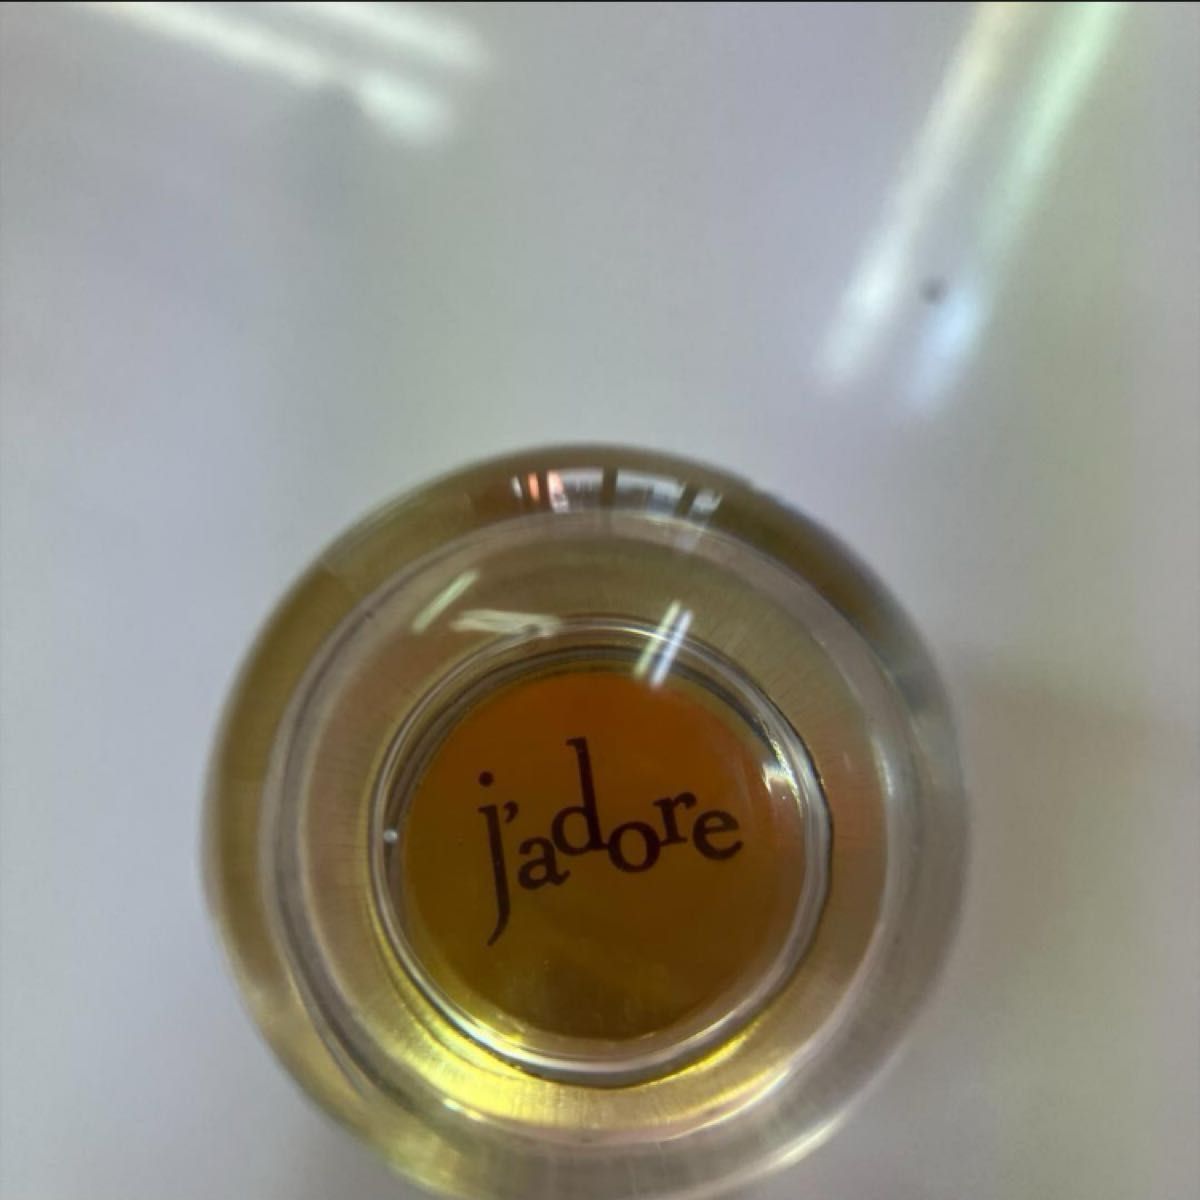 ディオール Dior 香水 ジャドール jadore 100ml